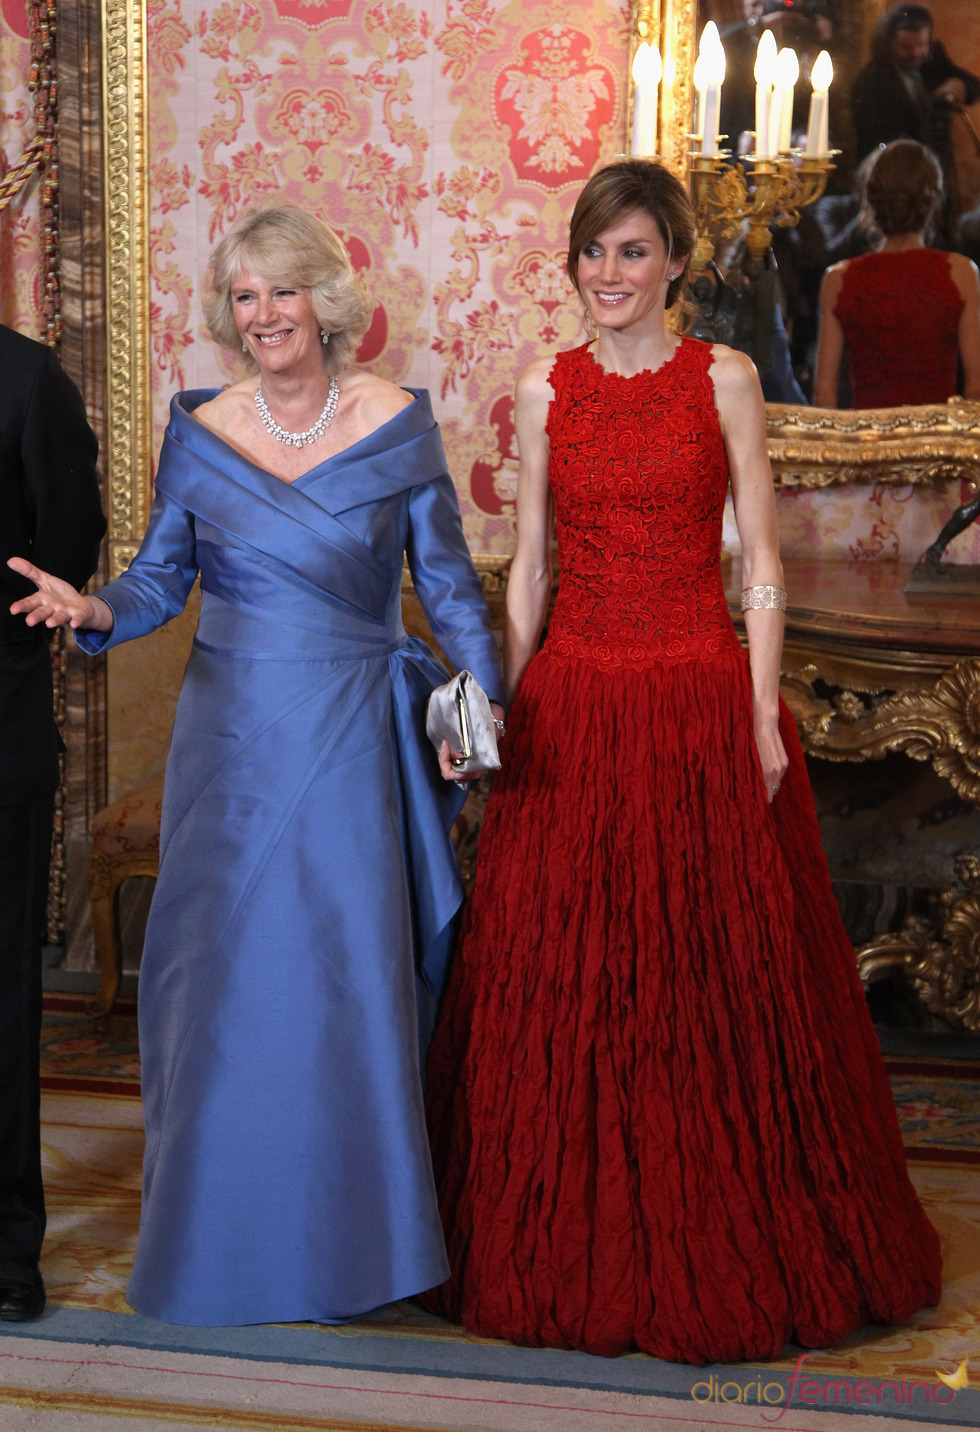 La elegancia de la Princesa Letizia y Camilla en la cena de gala